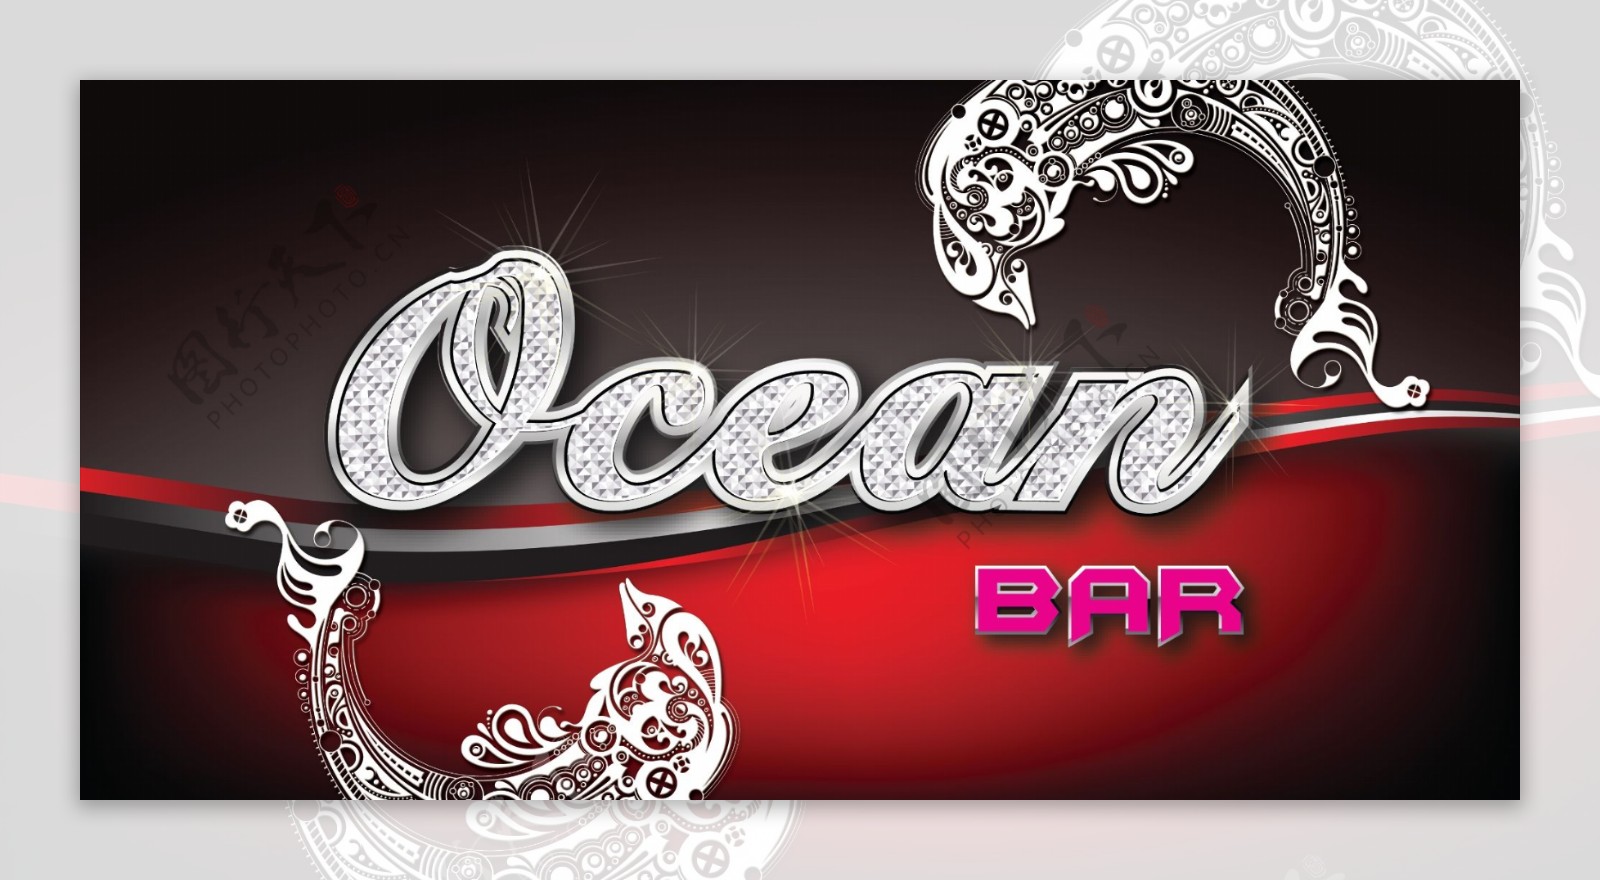 海洋酒吧优雅招牌设计